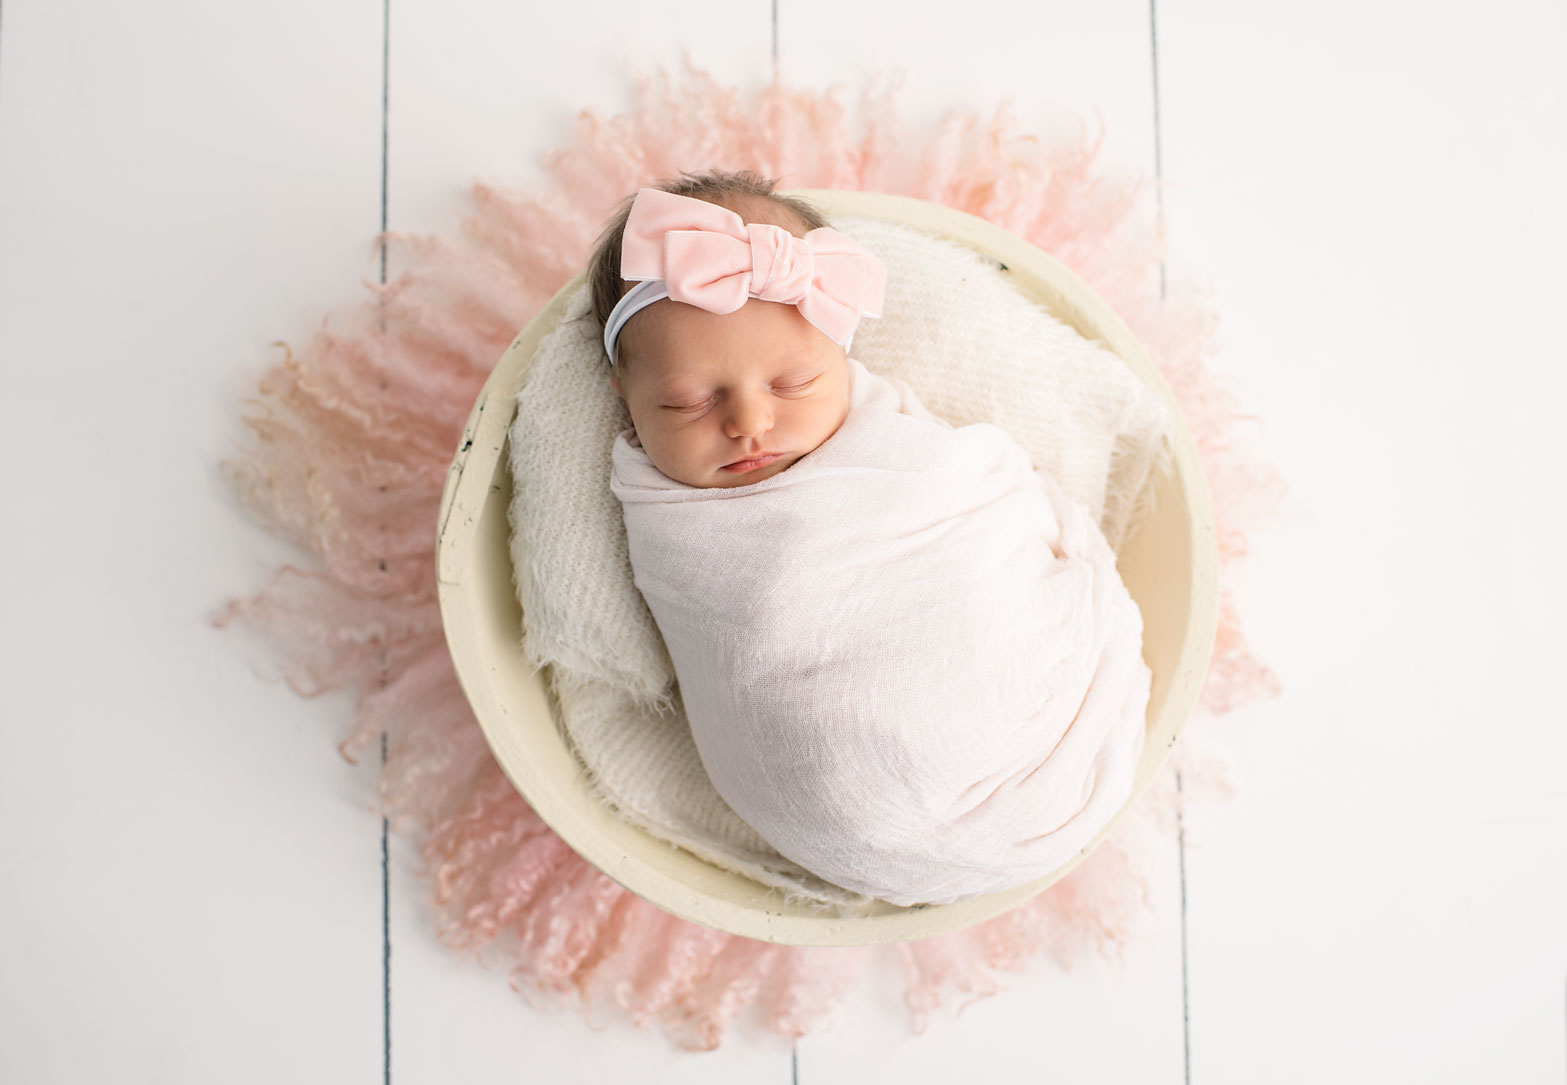 Newborn baby in pink